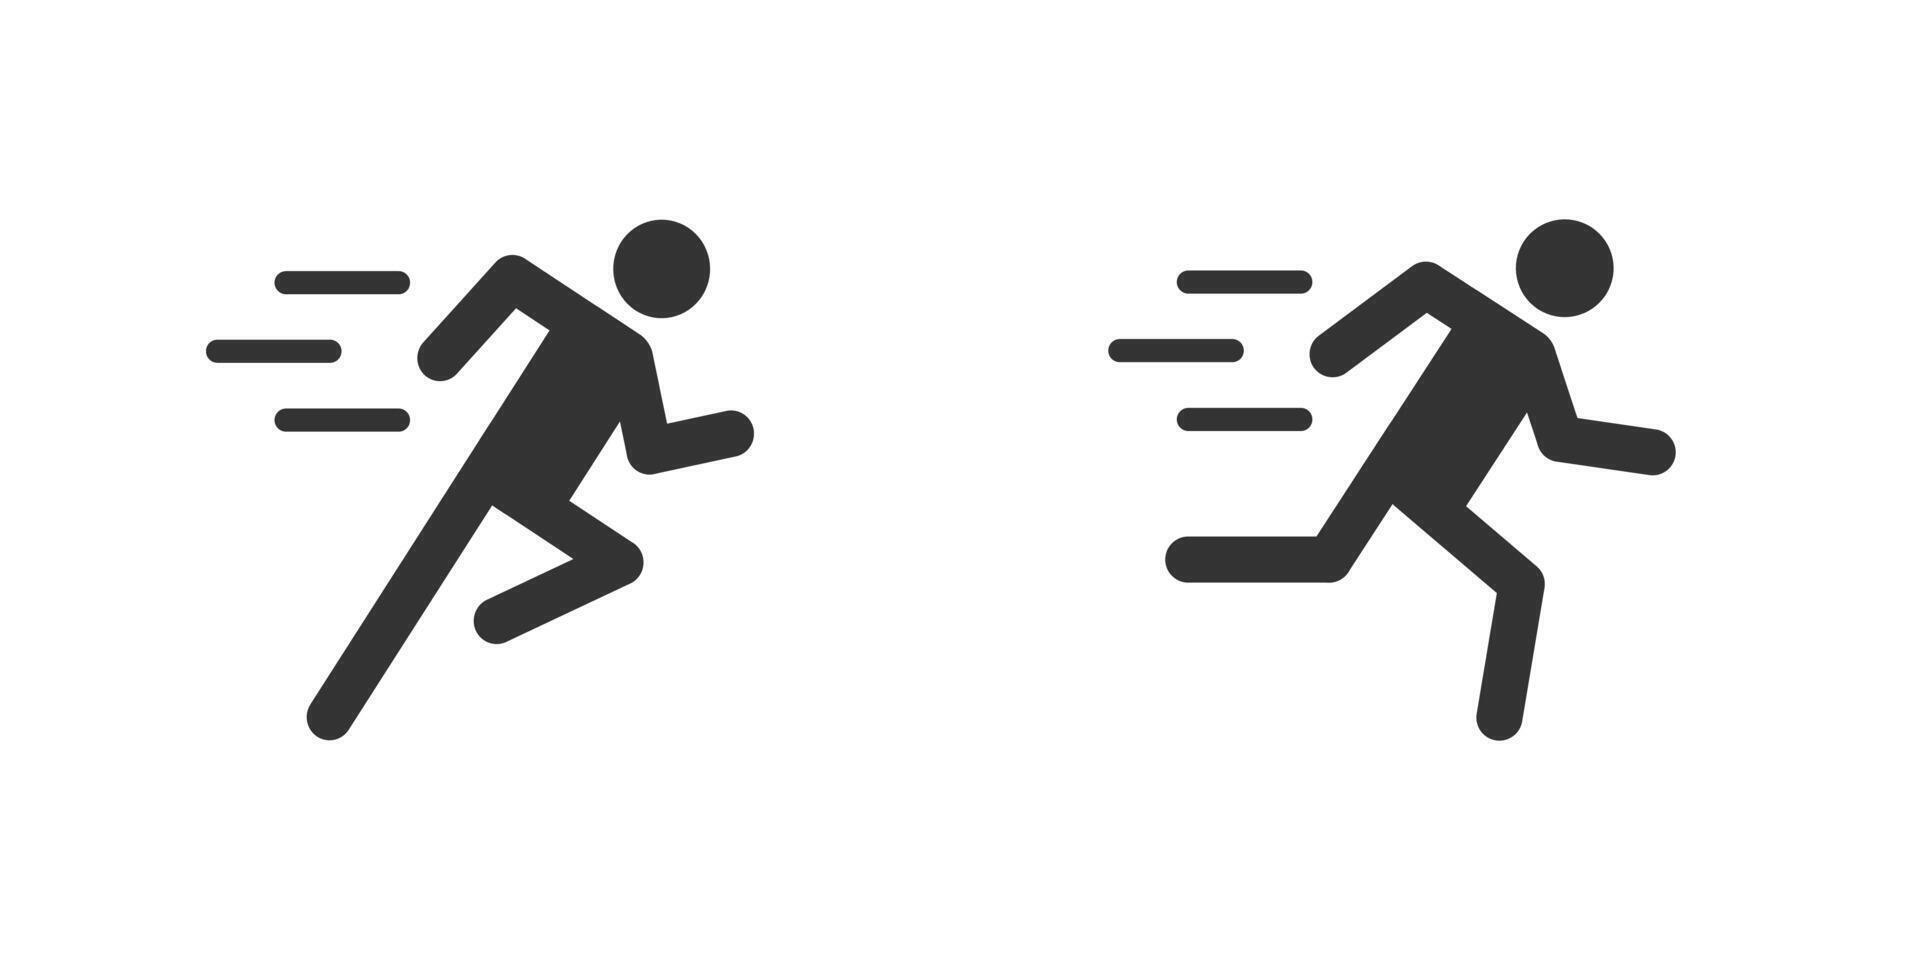 Man fast run icon. Running man sign. Sport symbol. Vector illustration.